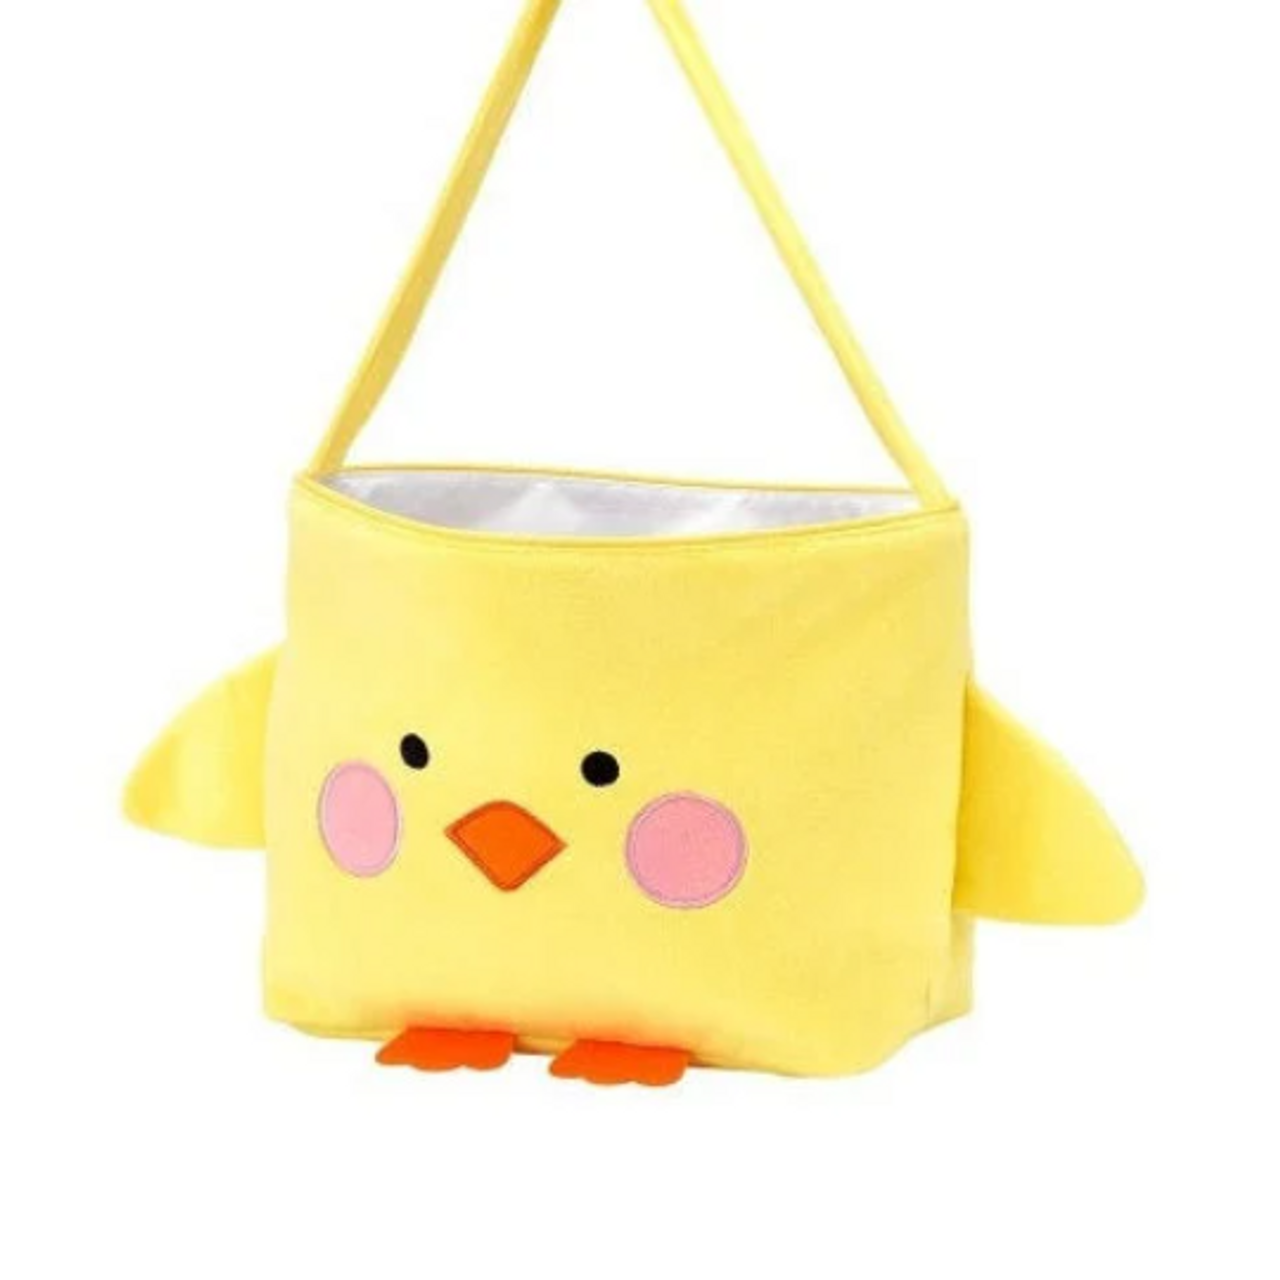 Soft Plush Yellow Chick Basket